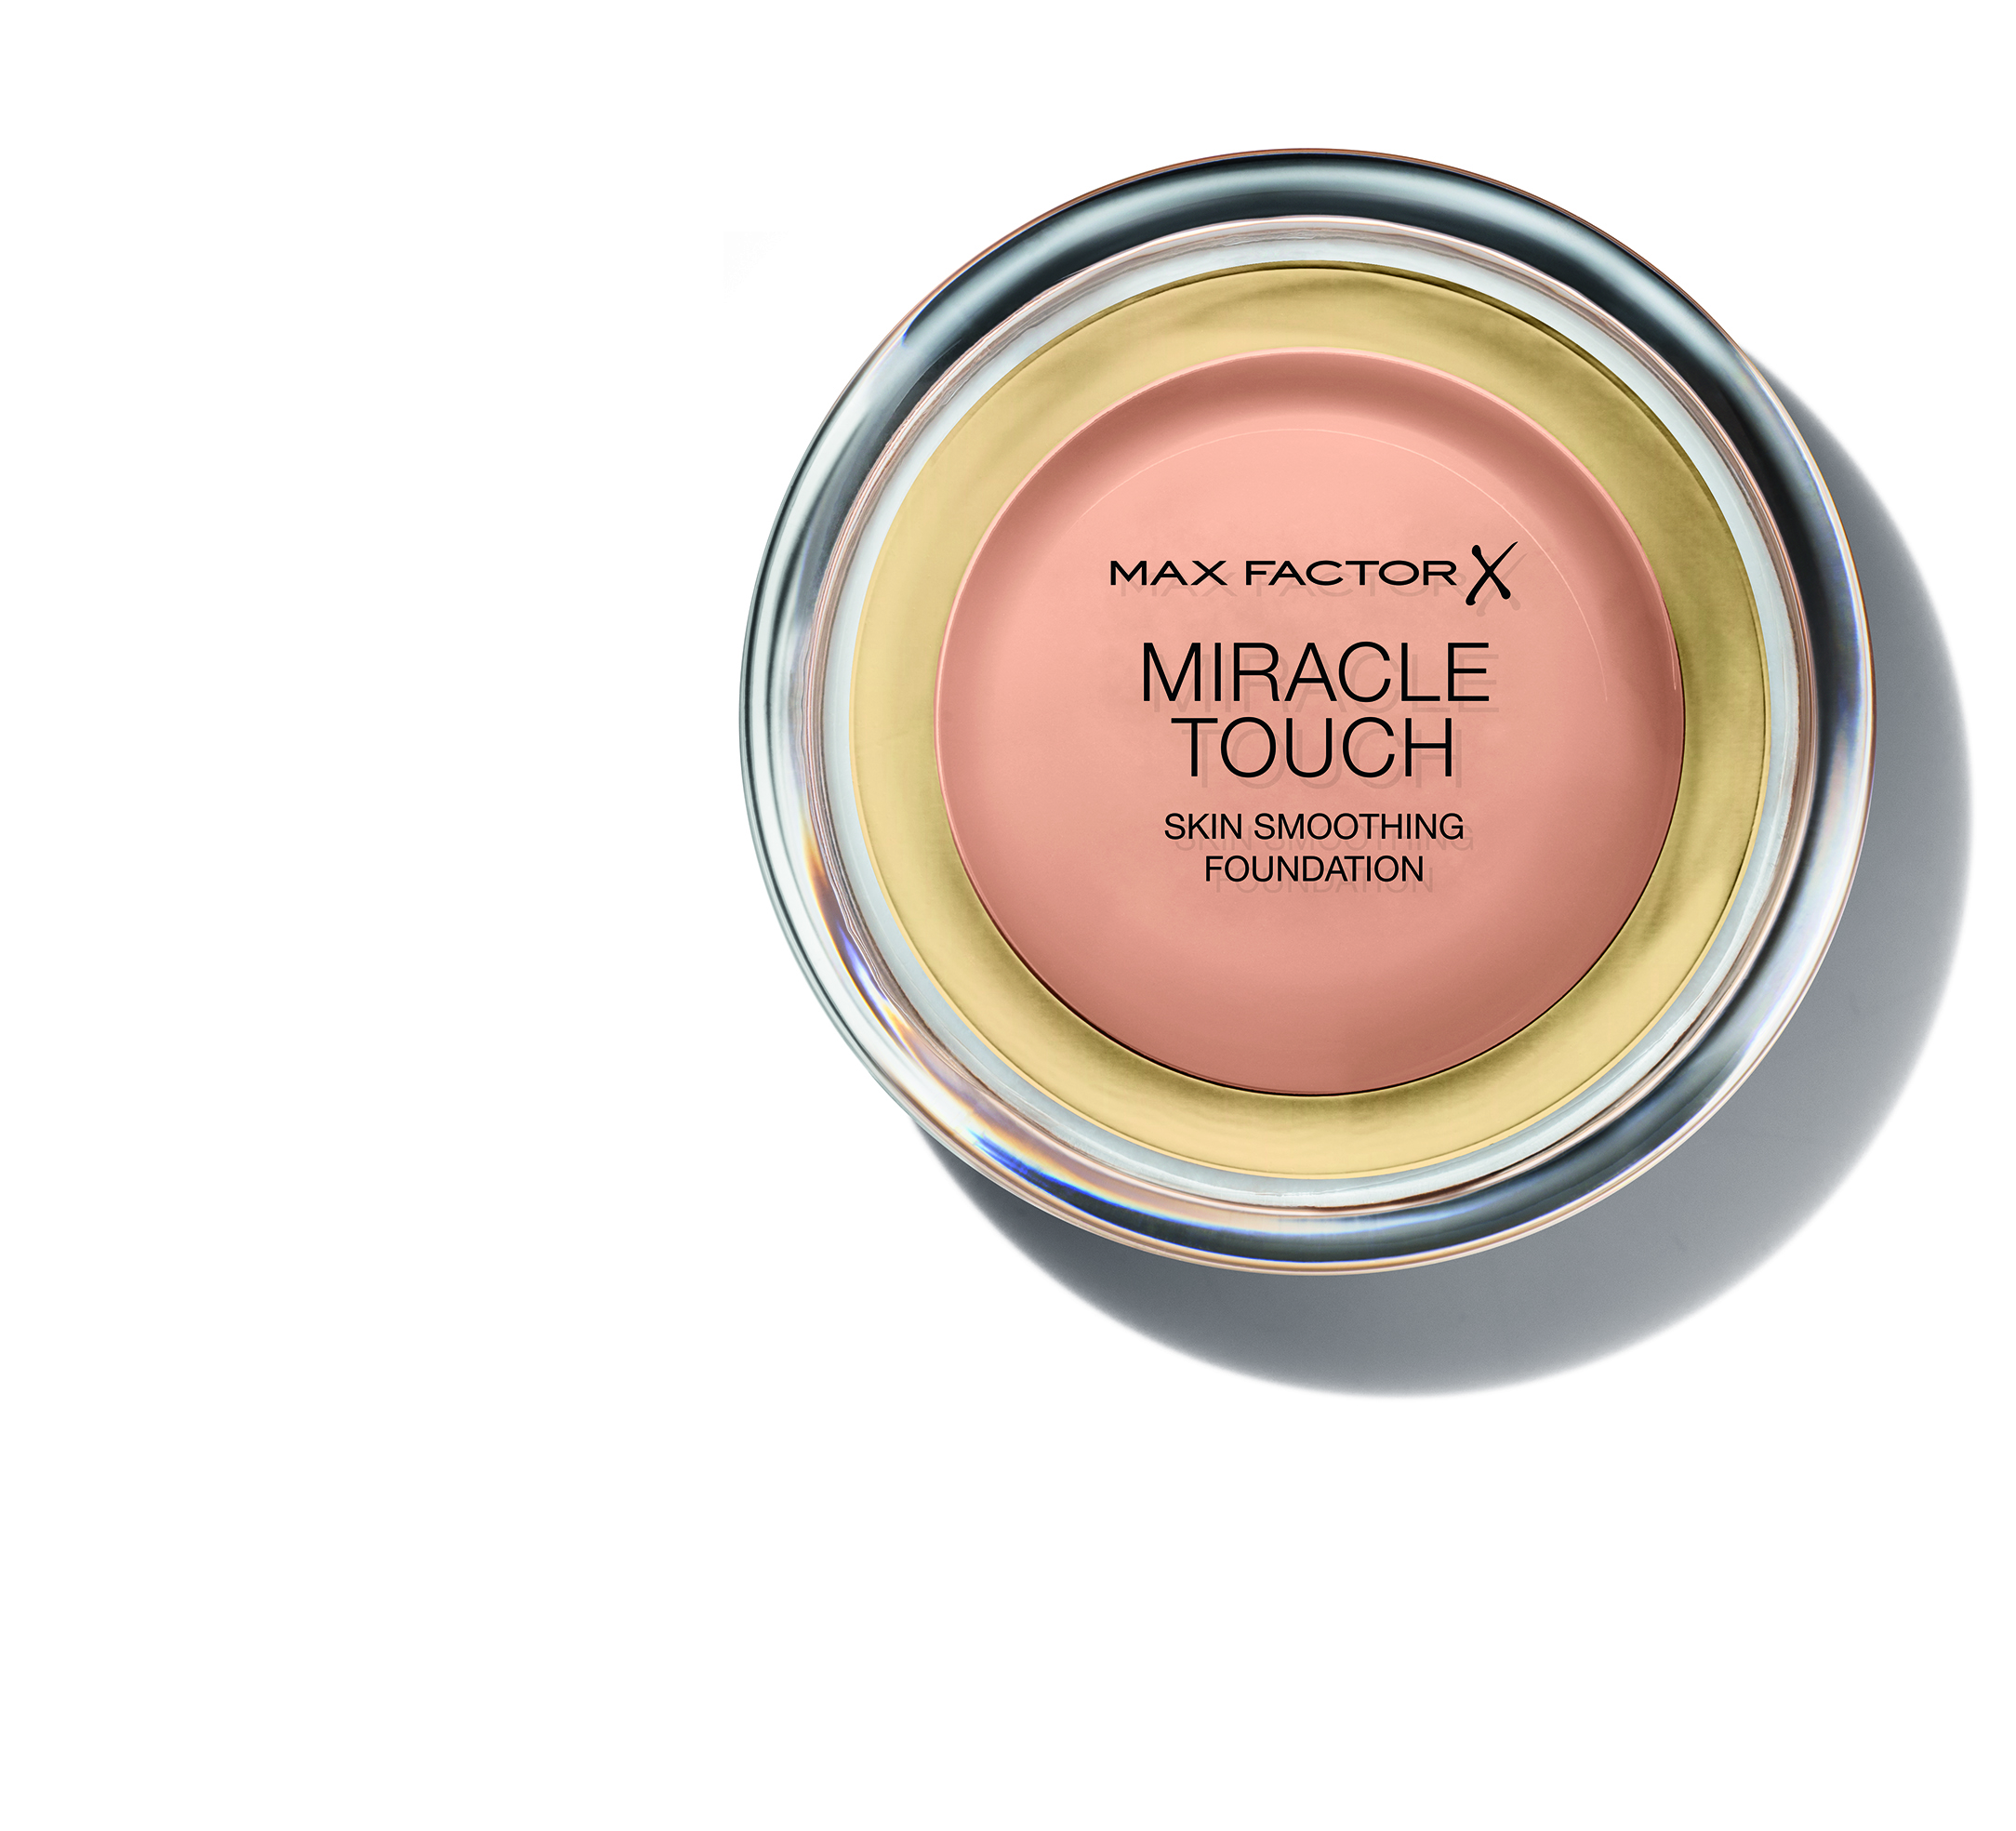 Legyen saját Miracle alapozód! A Miracle termékek középpontjában a különböző bőrproblémák és az elérni kívánt eredmények állnak.